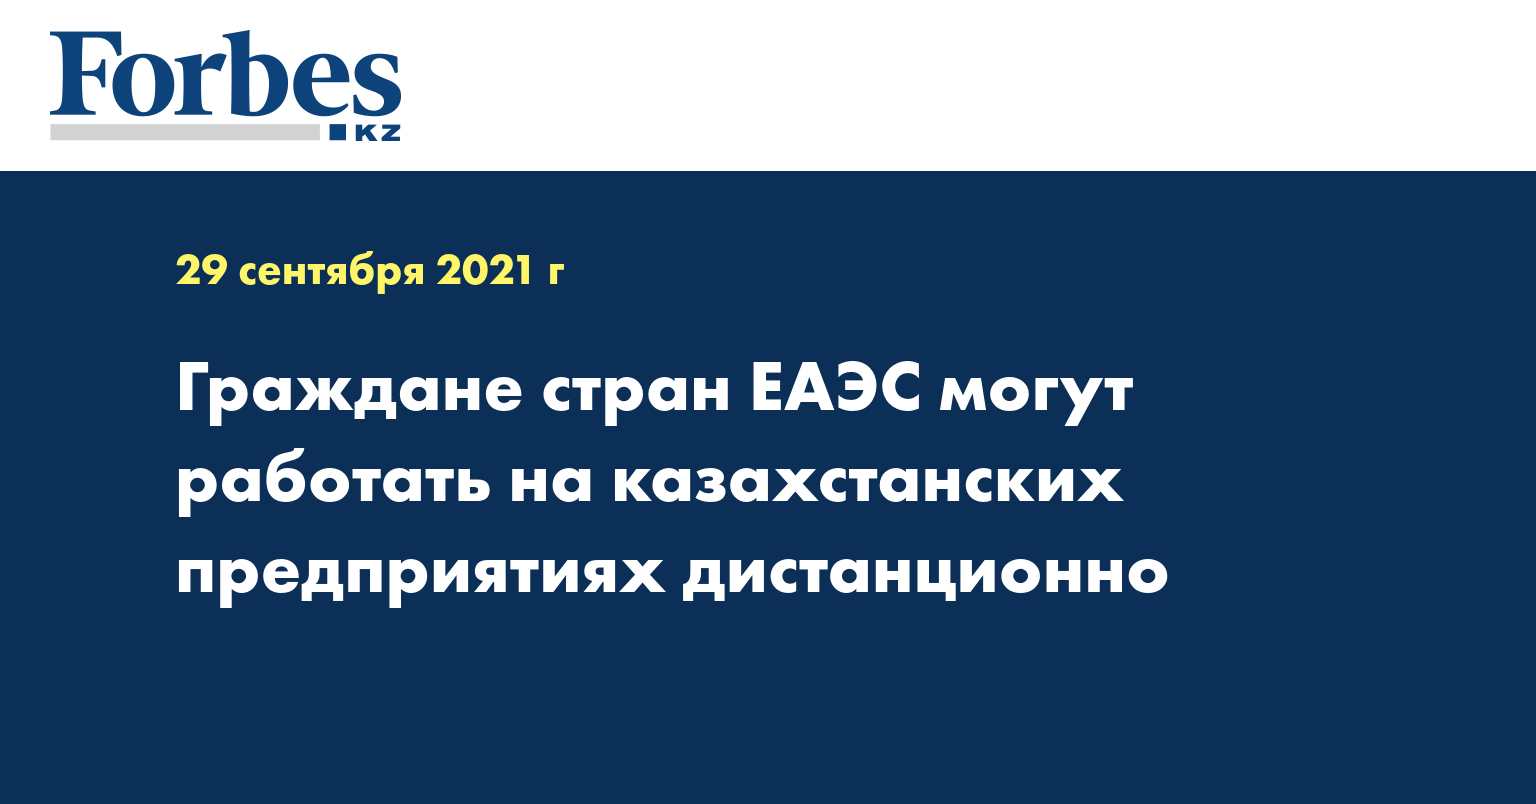 Граждане стран ЕАЭС могут работать на казахстанских предприятиях дистанционно